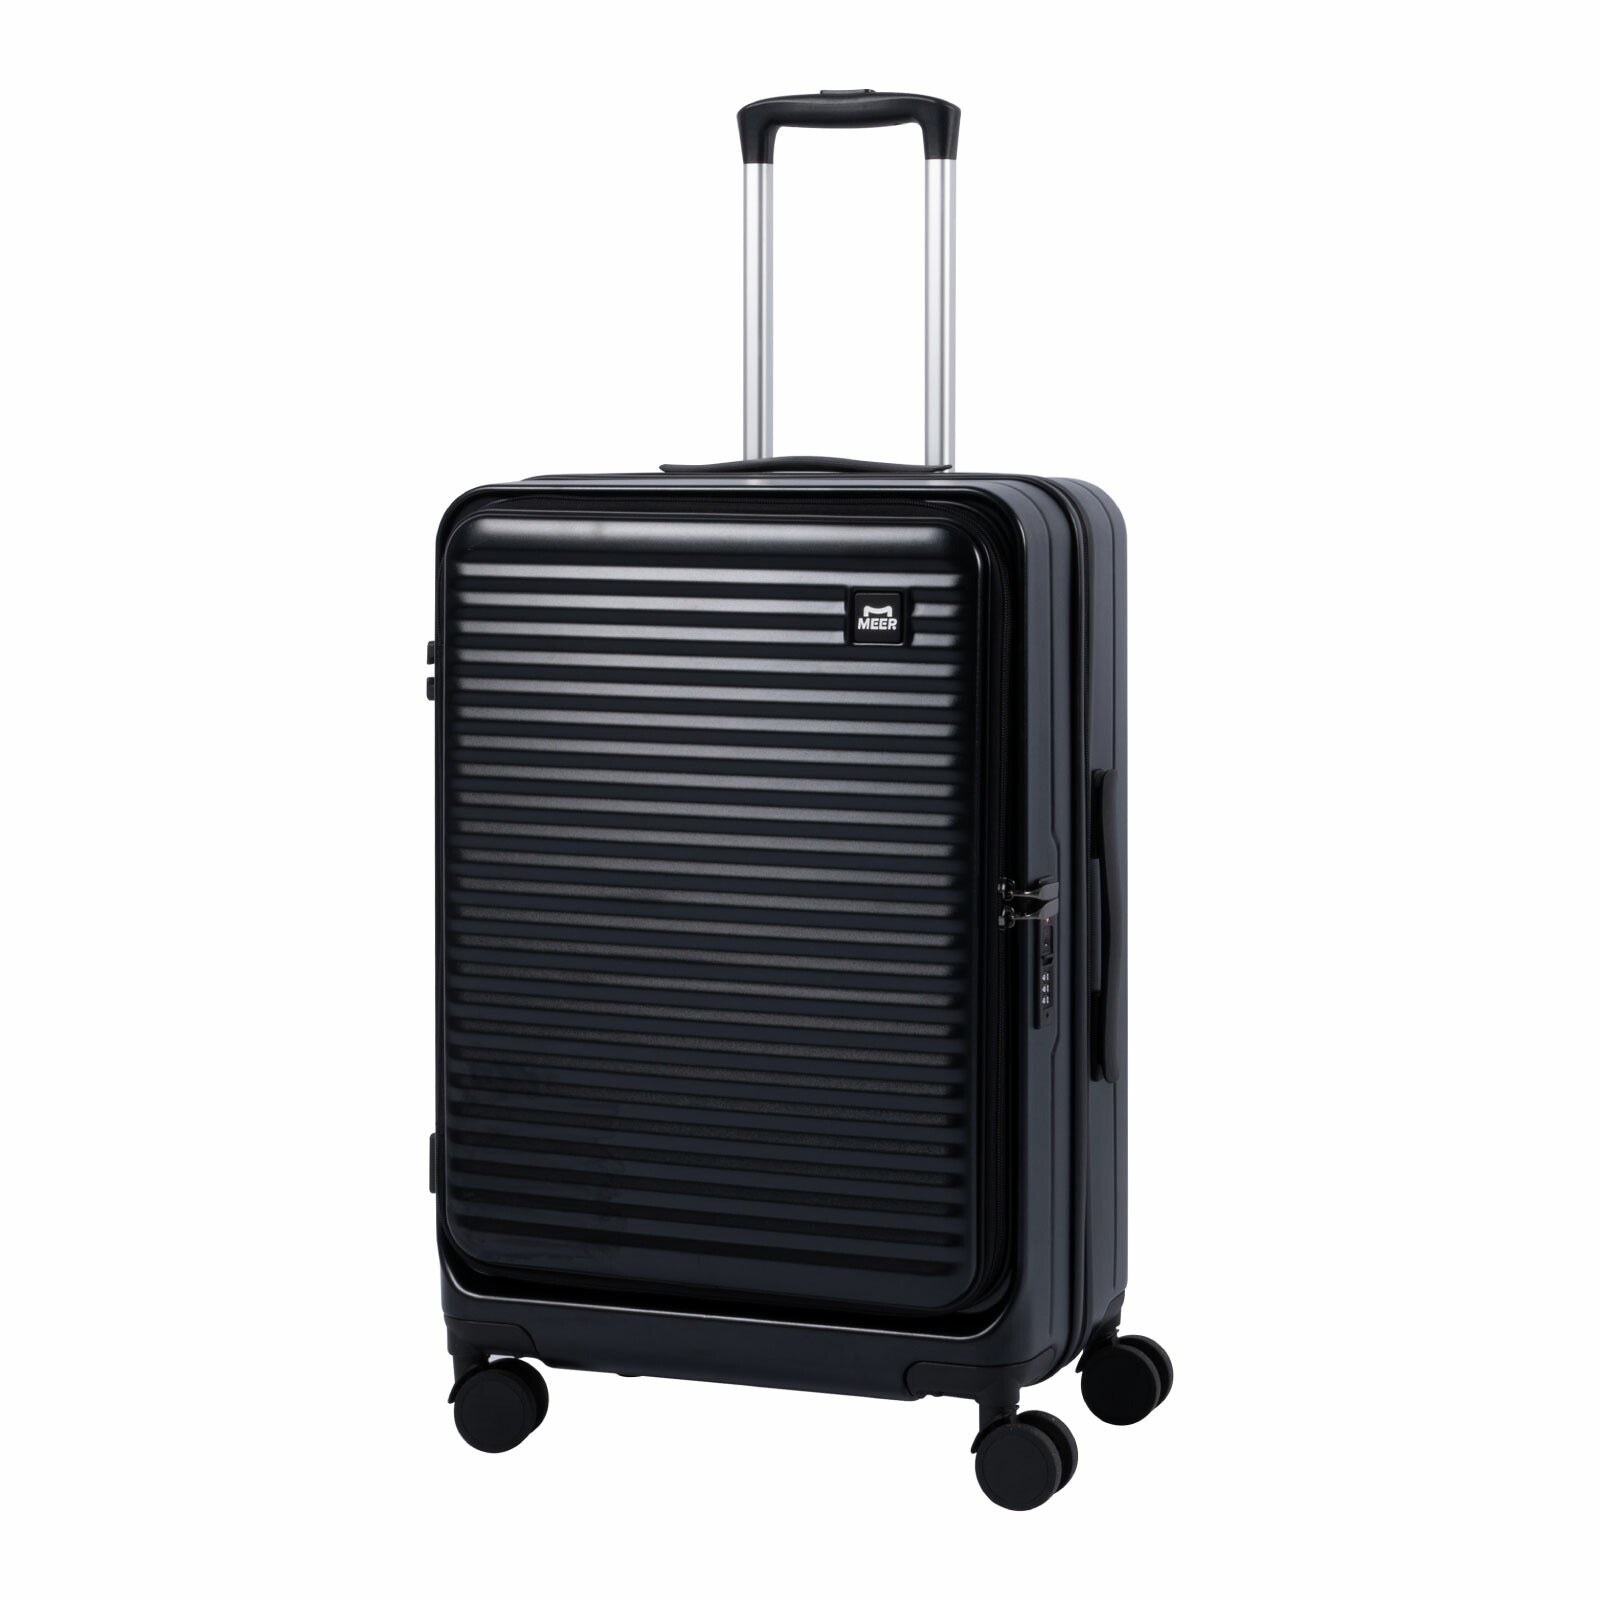 前開き スーツケース キャリーケース Mサイズ 60L キャリーバッグ 4カラー選ぶ 3-5日用 泊まる 軽量設計 360度回転 大容量 ファスナー式 ビジネス 修学旅行 海外旅行 国内旅行 小型 出張 sc118-24